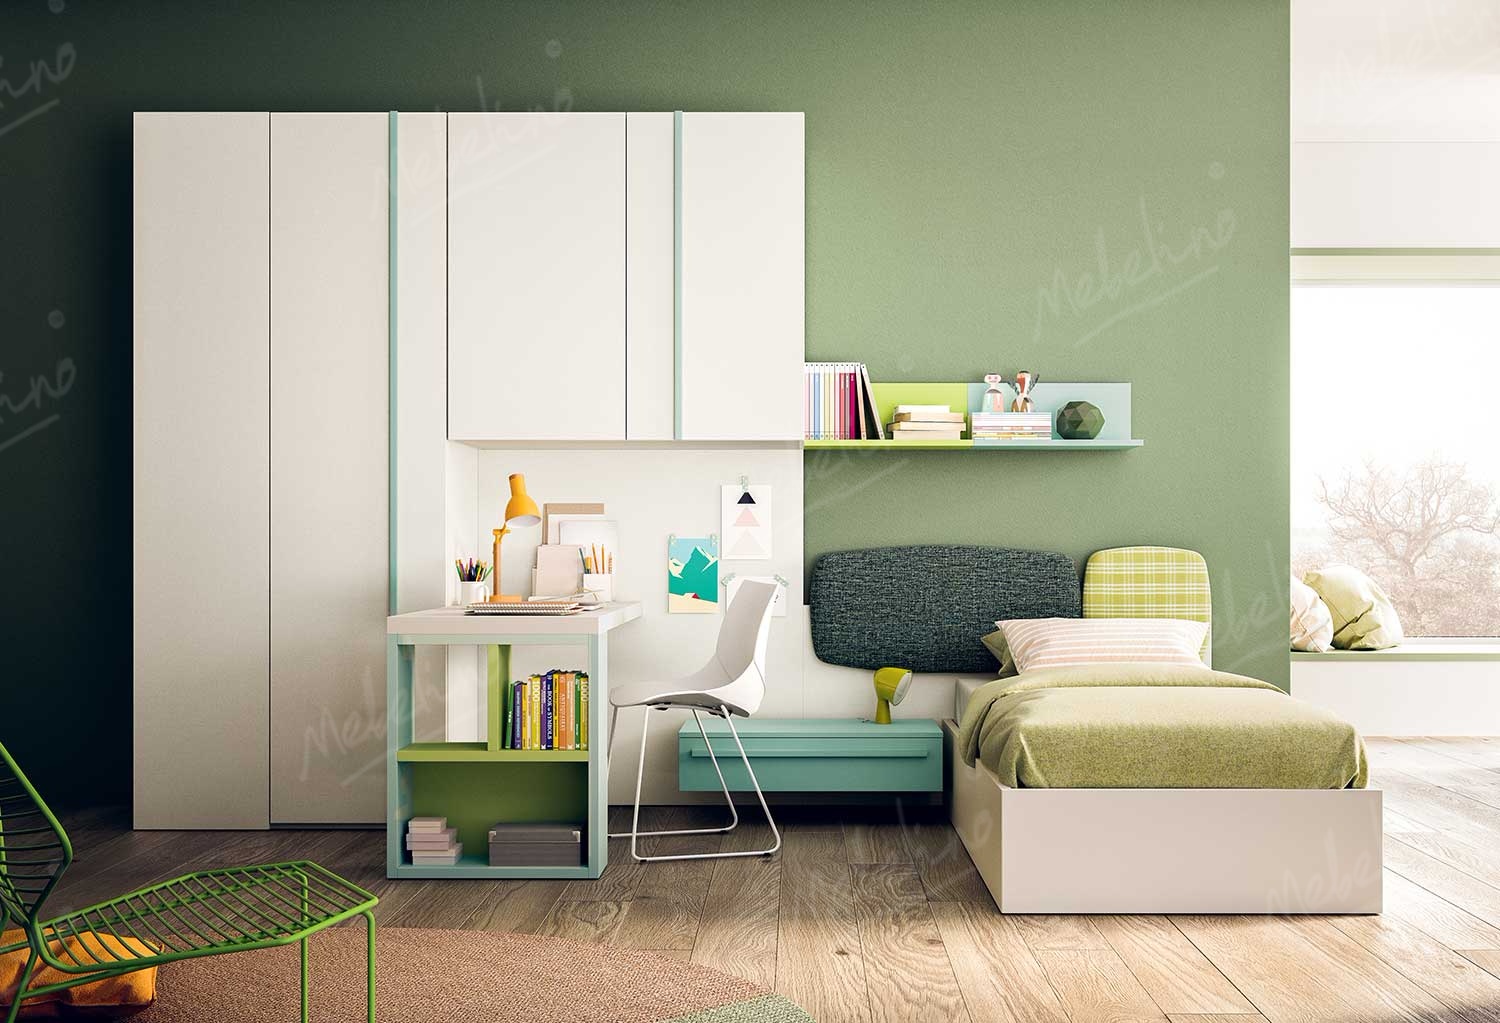 Мебель для детской комнаты в бело-зеленых цветах Md200